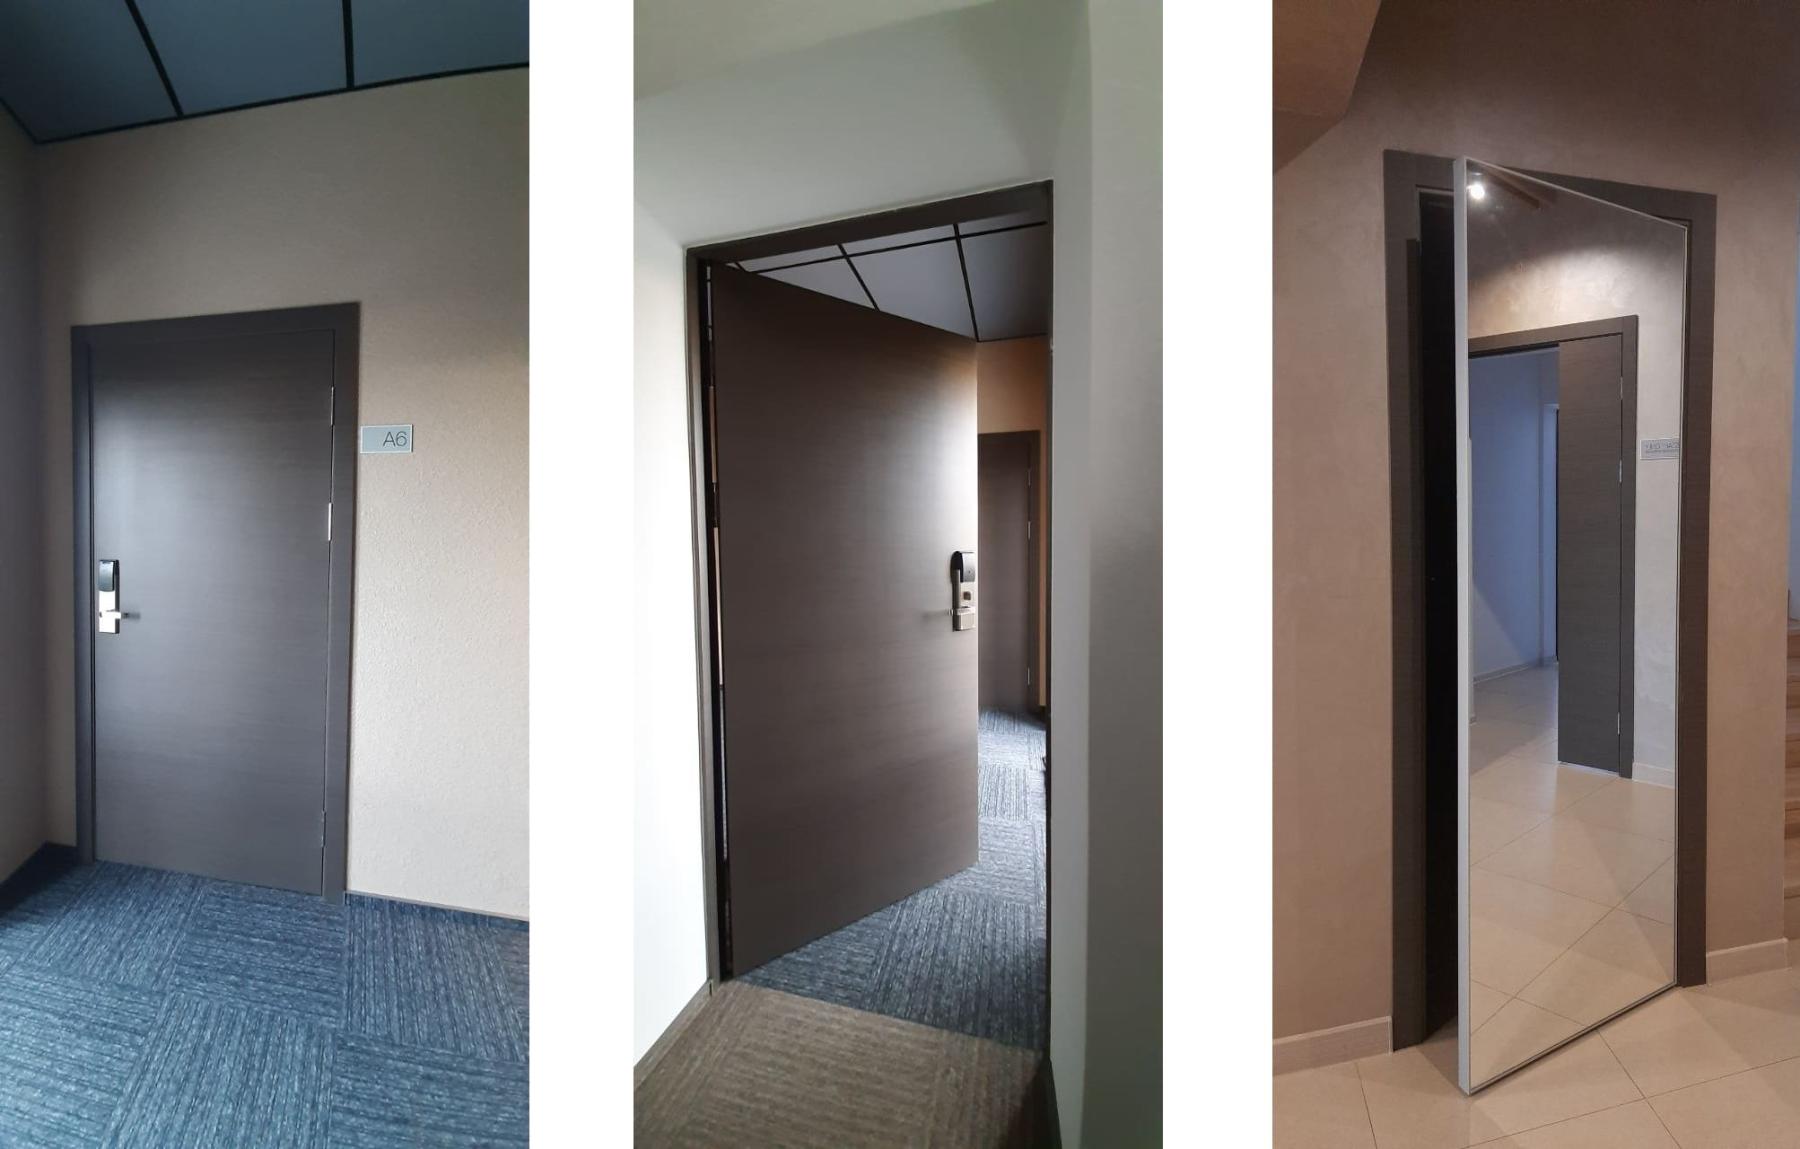 Двери в номера отелей от производителя Ostium Doors